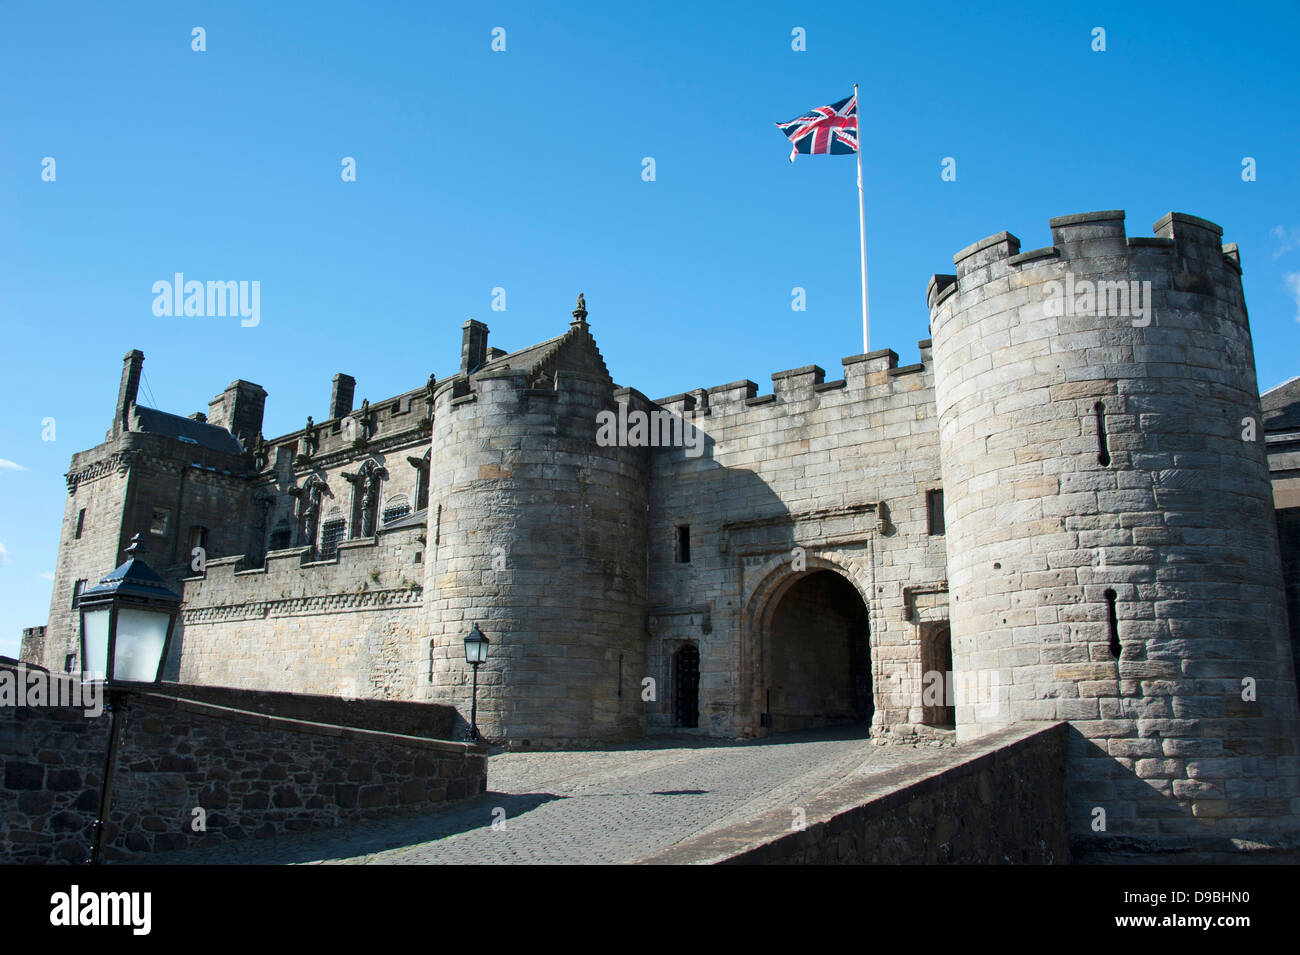 Le Château de Stirling, Stirling, Ecosse, Grande-Bretagne, Europe , Château de Stirling, Stirling, Schottland, Grossbritannien, Europa, St Banque D'Images